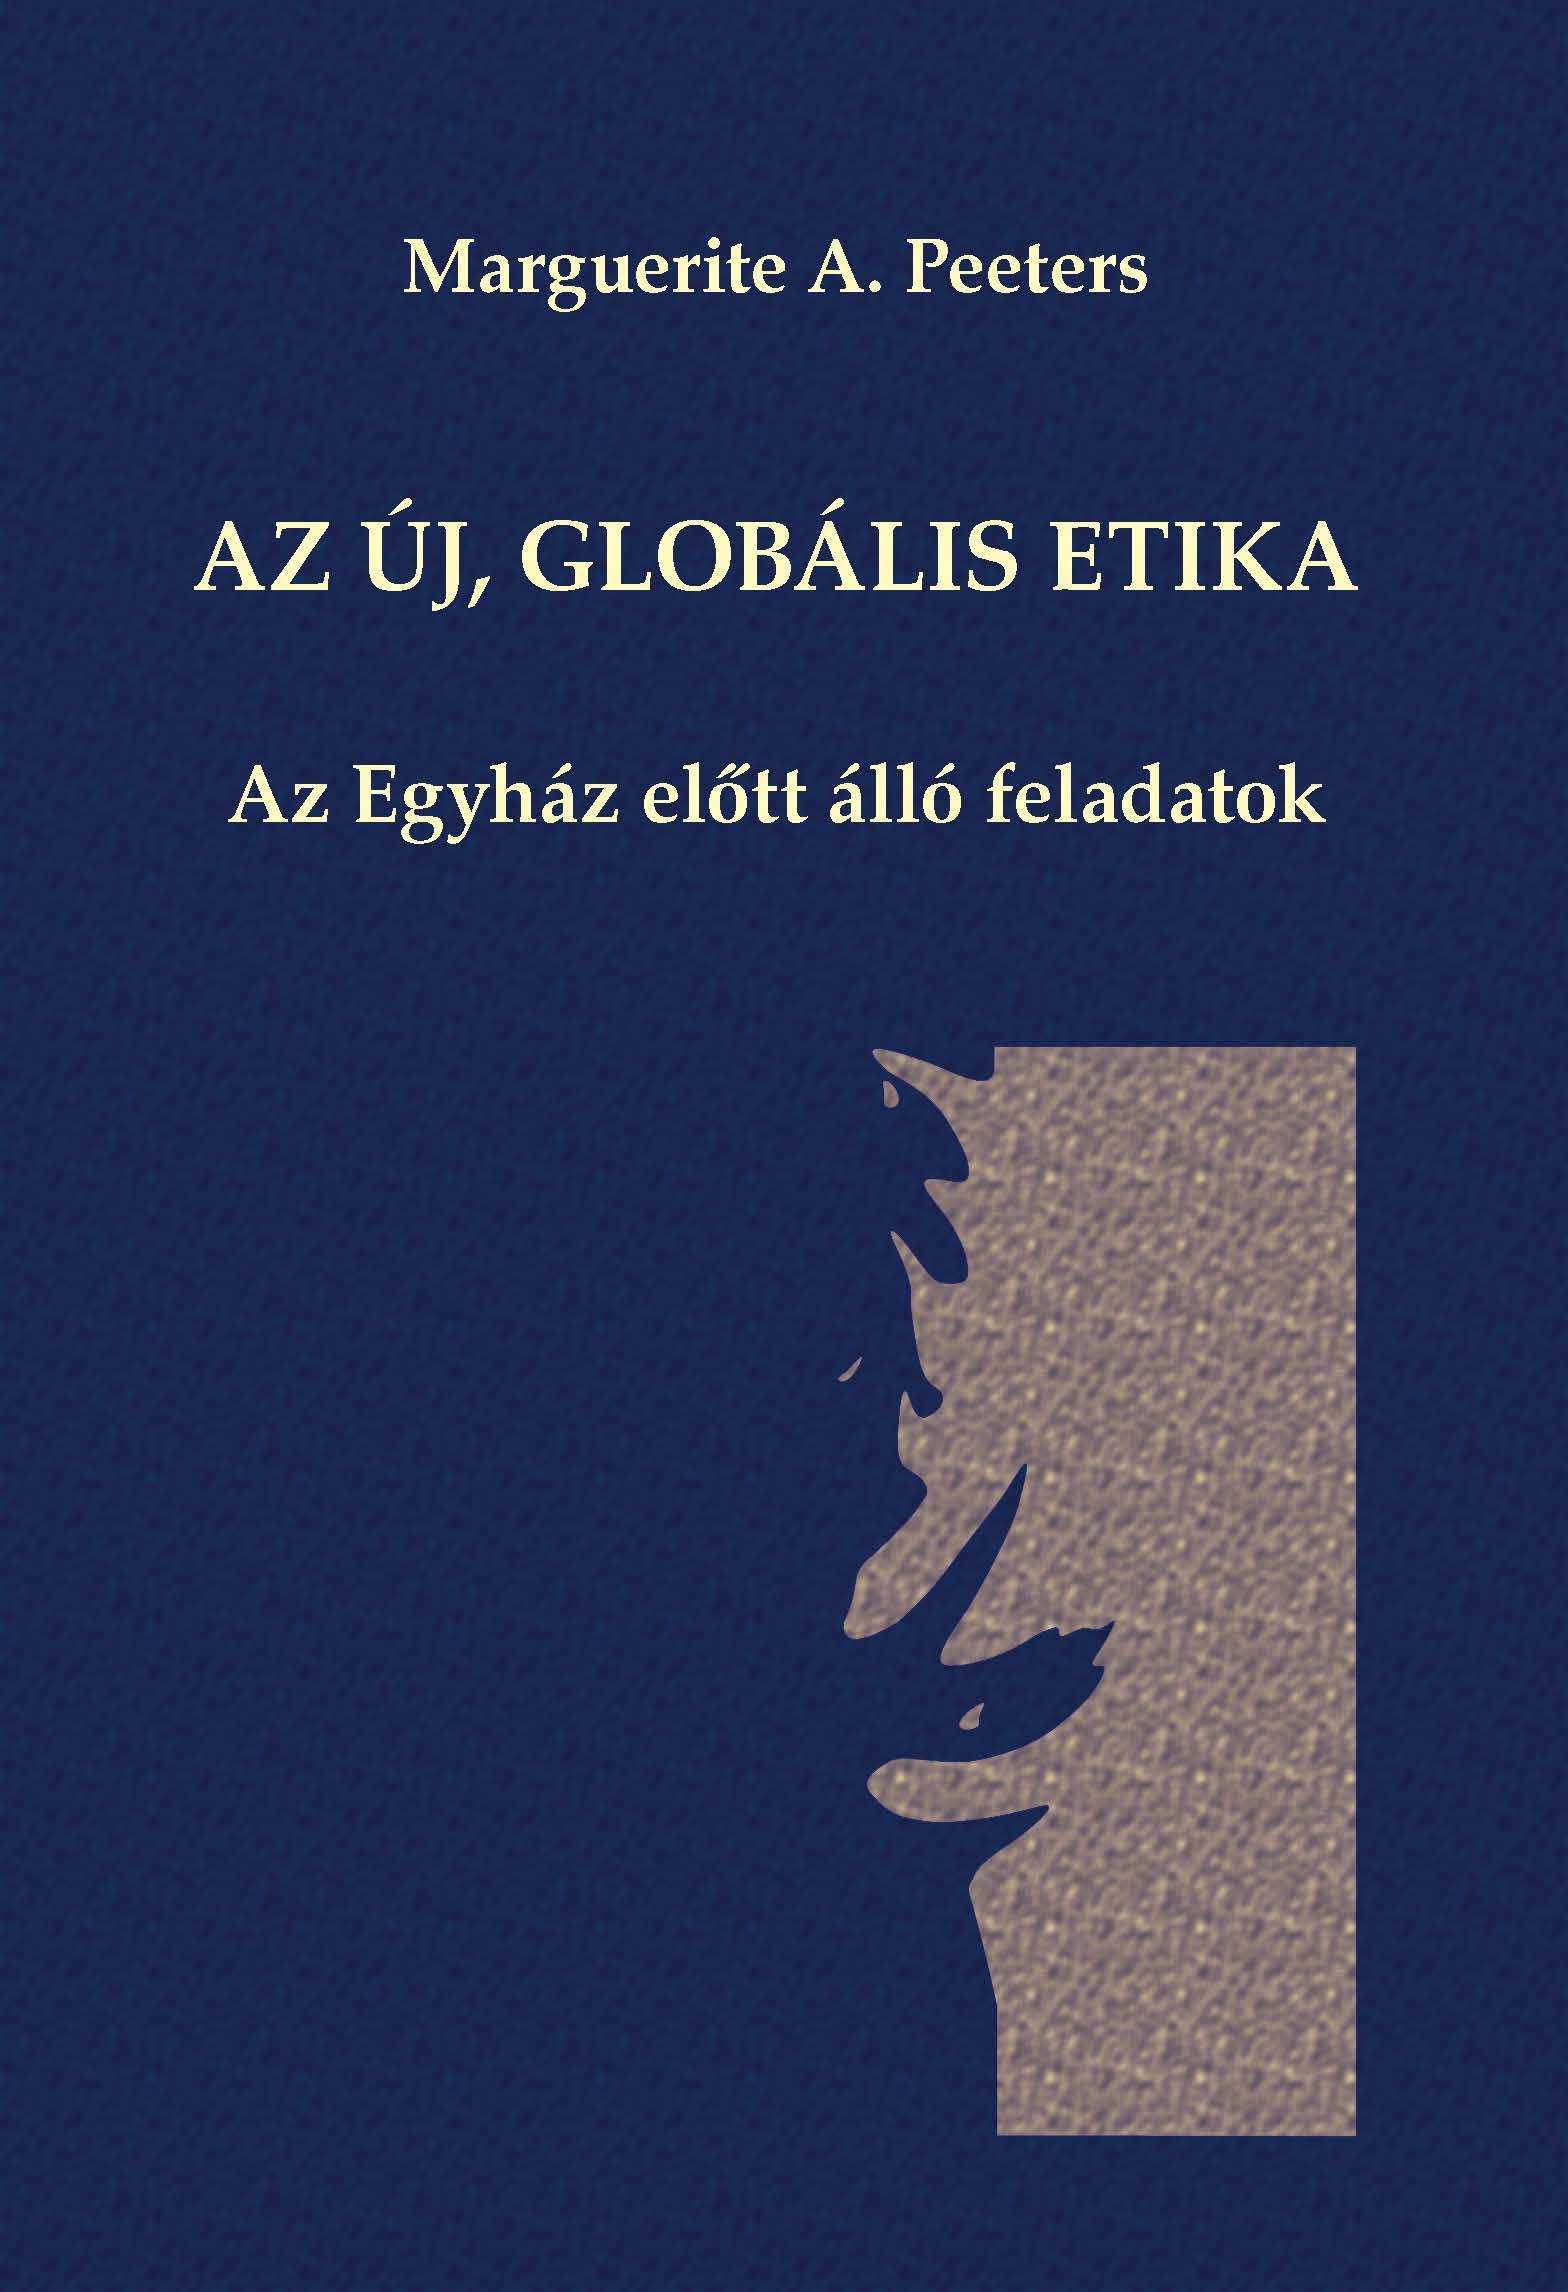 az-uj-globalis-etika